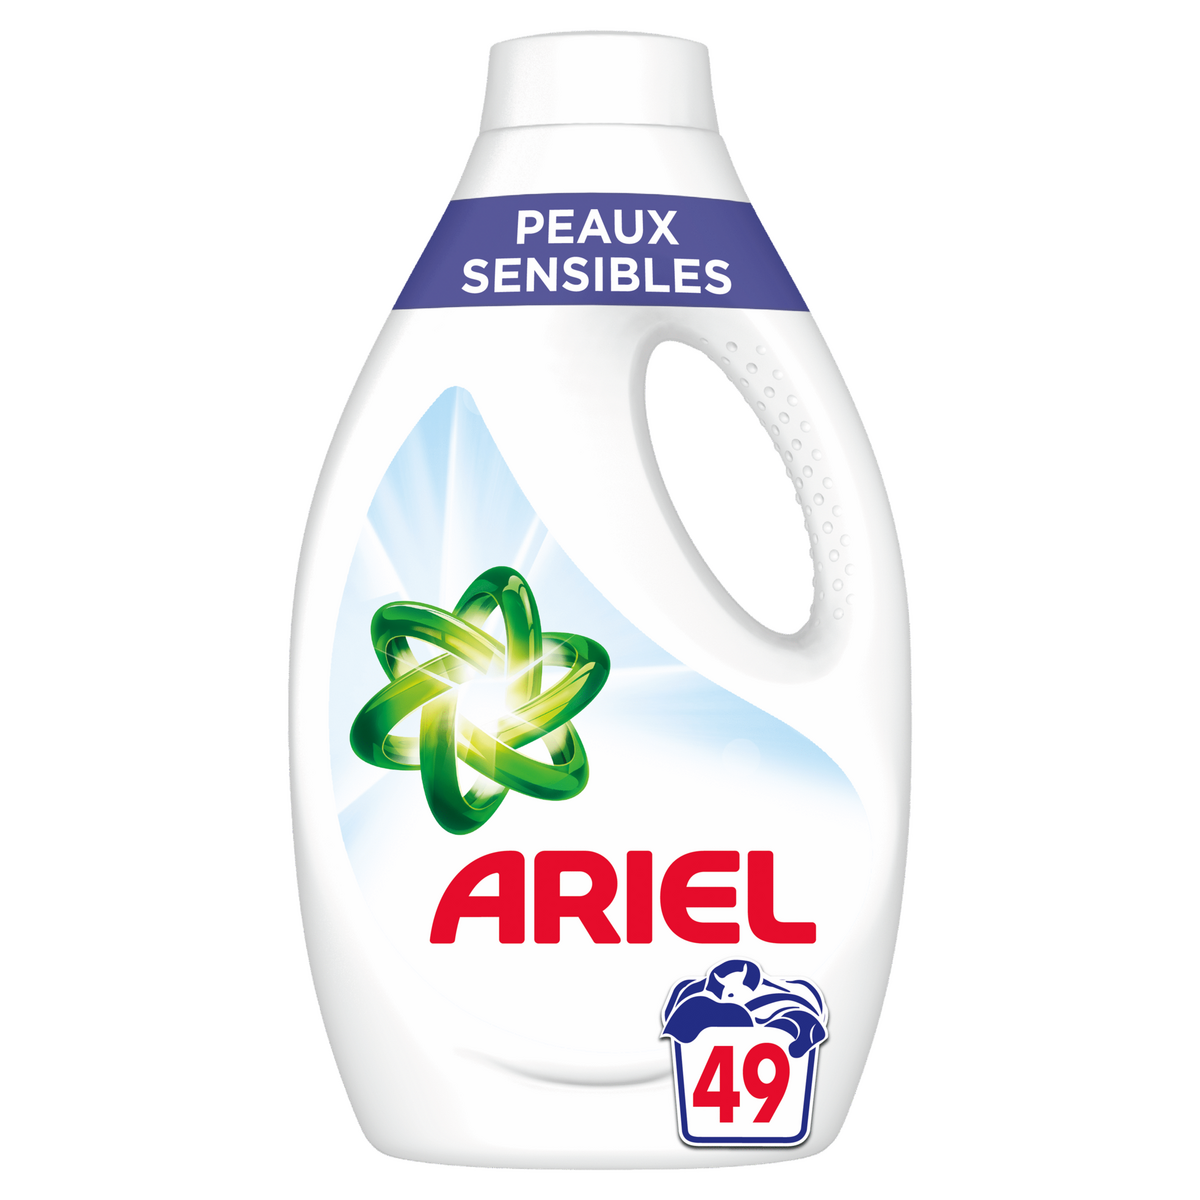 ARIEL Lessive liquide peaux sensibles 49 lavages 2.45l pas cher